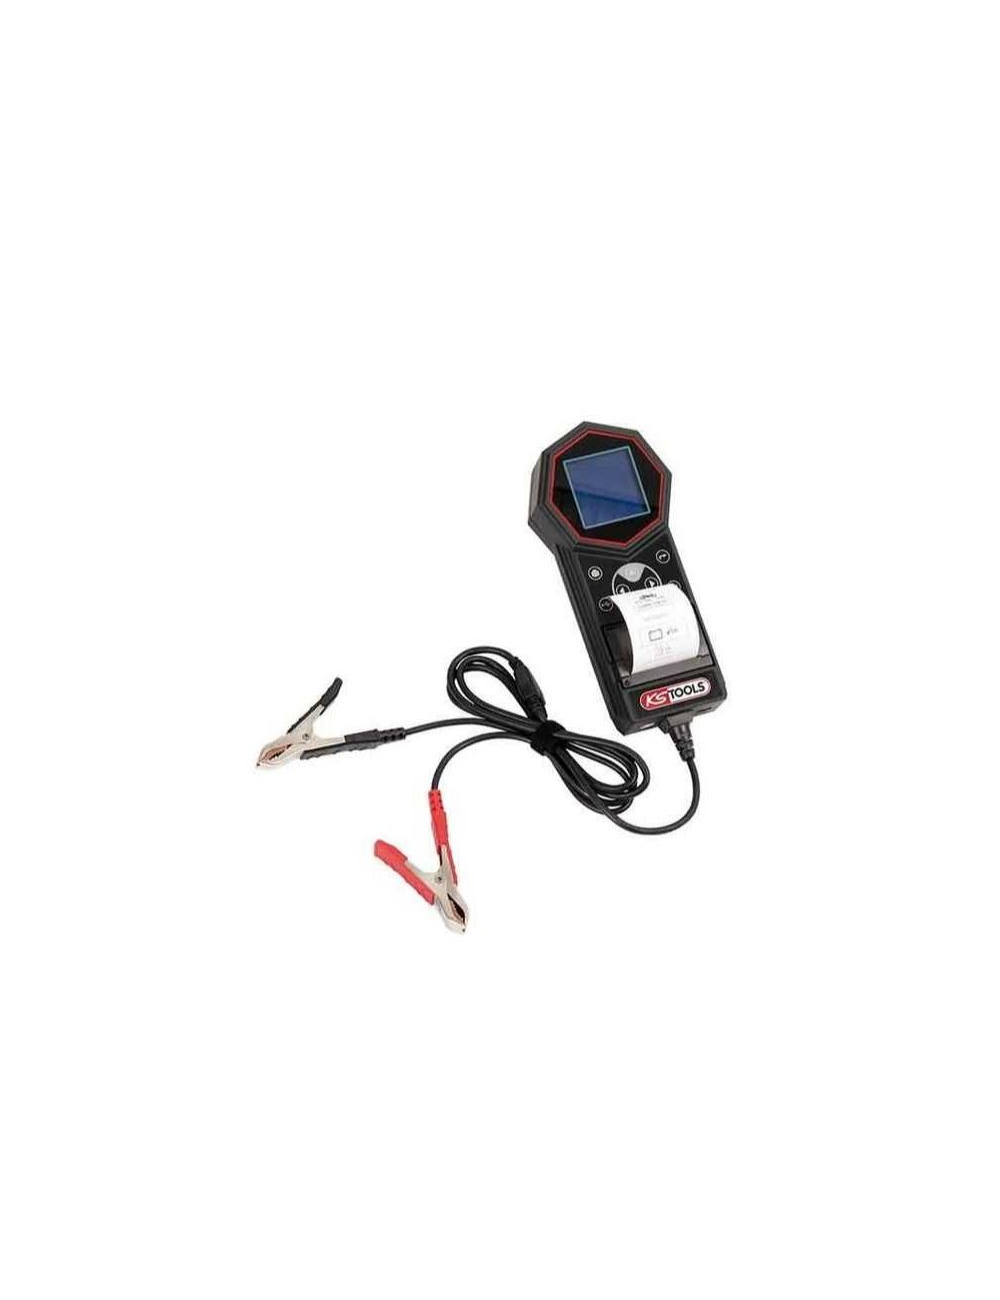 KS TOOLS 550.1646 Testeur Digital 12v de Batterie et Circuit de Charge avec imprimante intégrée Rouge/Gris 